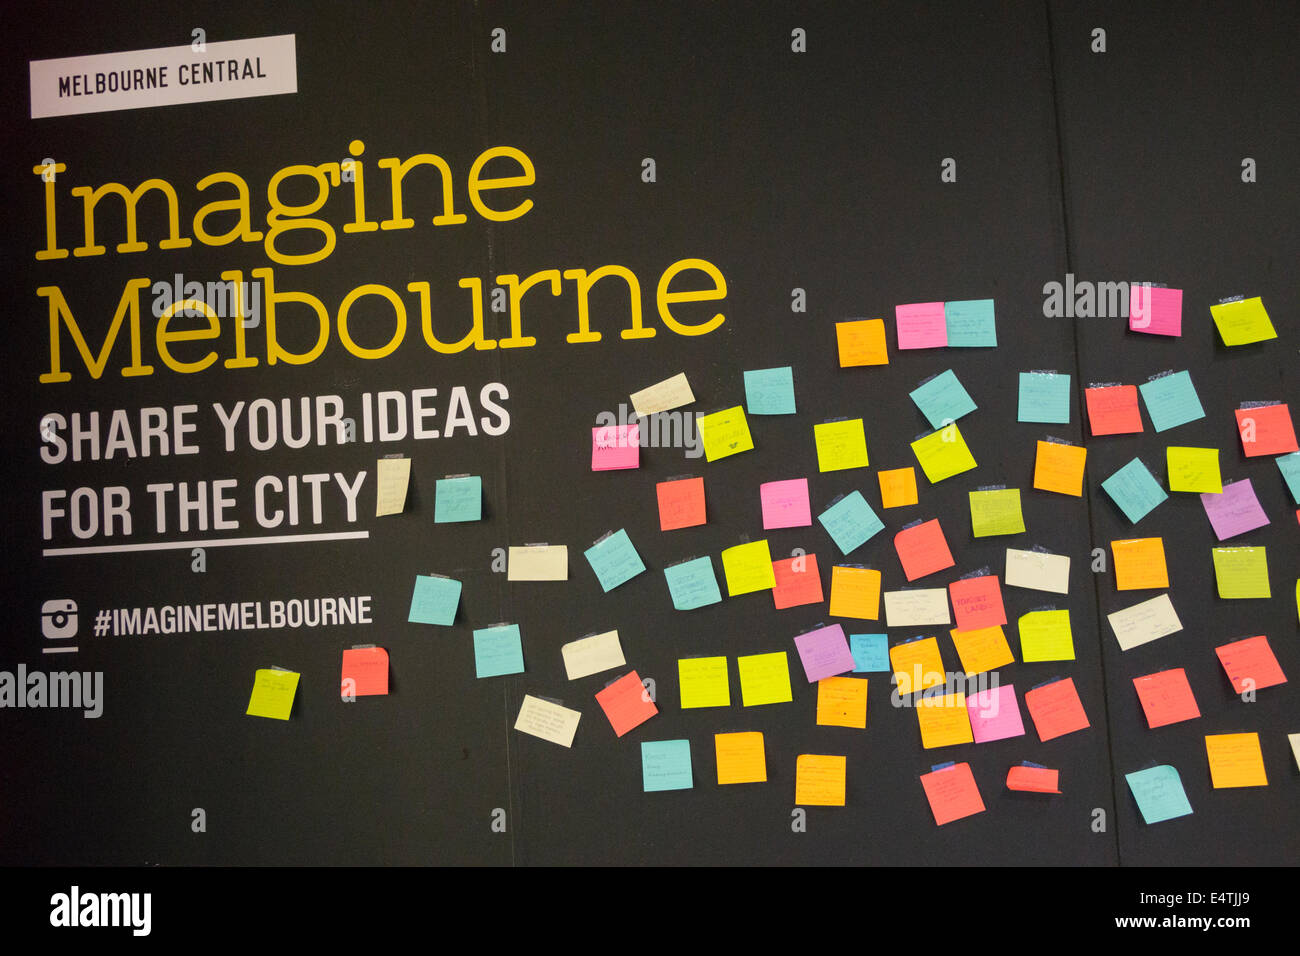 Melbourne Australie,Central,imagine Melbourne,partager vos idées,cloud,posted,notes,AU140319120 Banque D'Images